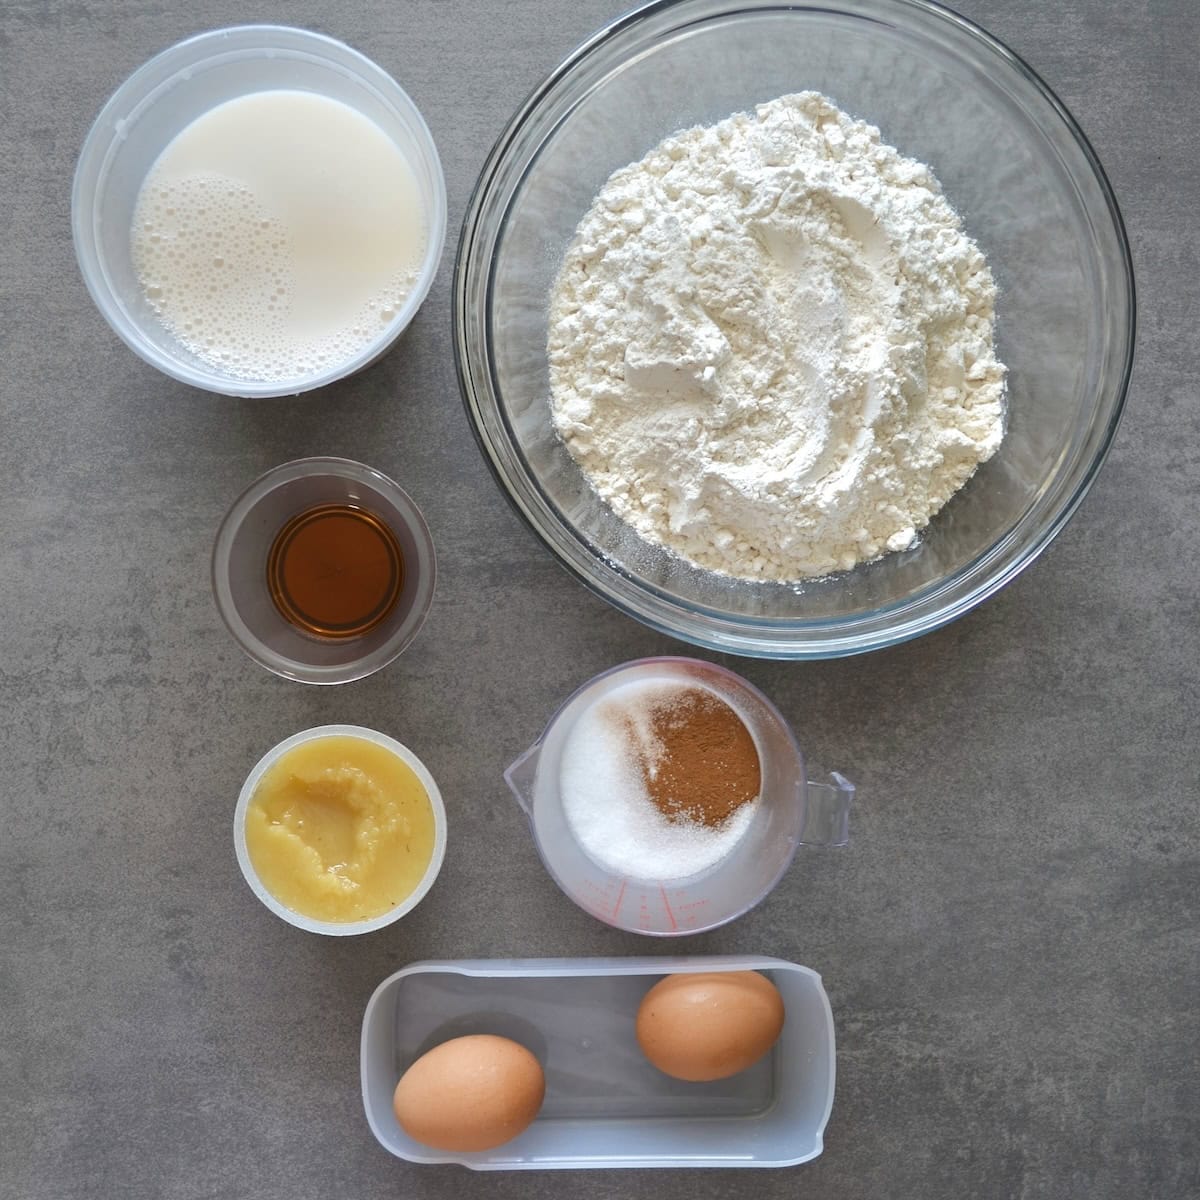 Ingredients needed for sheet pan pancakes